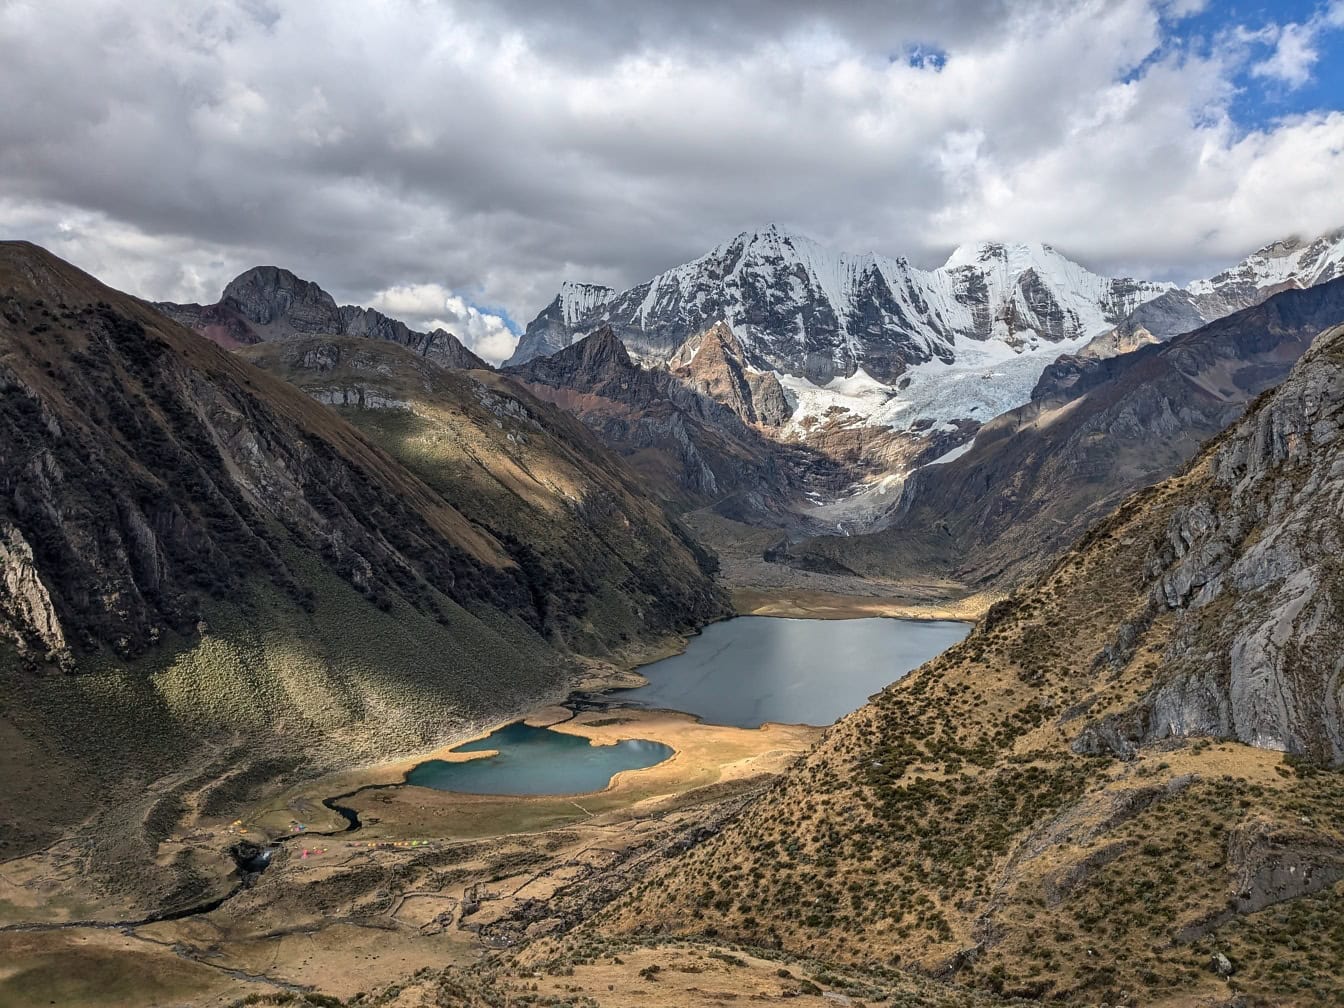 Peru’nun And Dağları’ndaki bir dağ silsilesi olan Cordillera Huahuaash’ta dağlarla çevrili göllerin panoramik manzarası